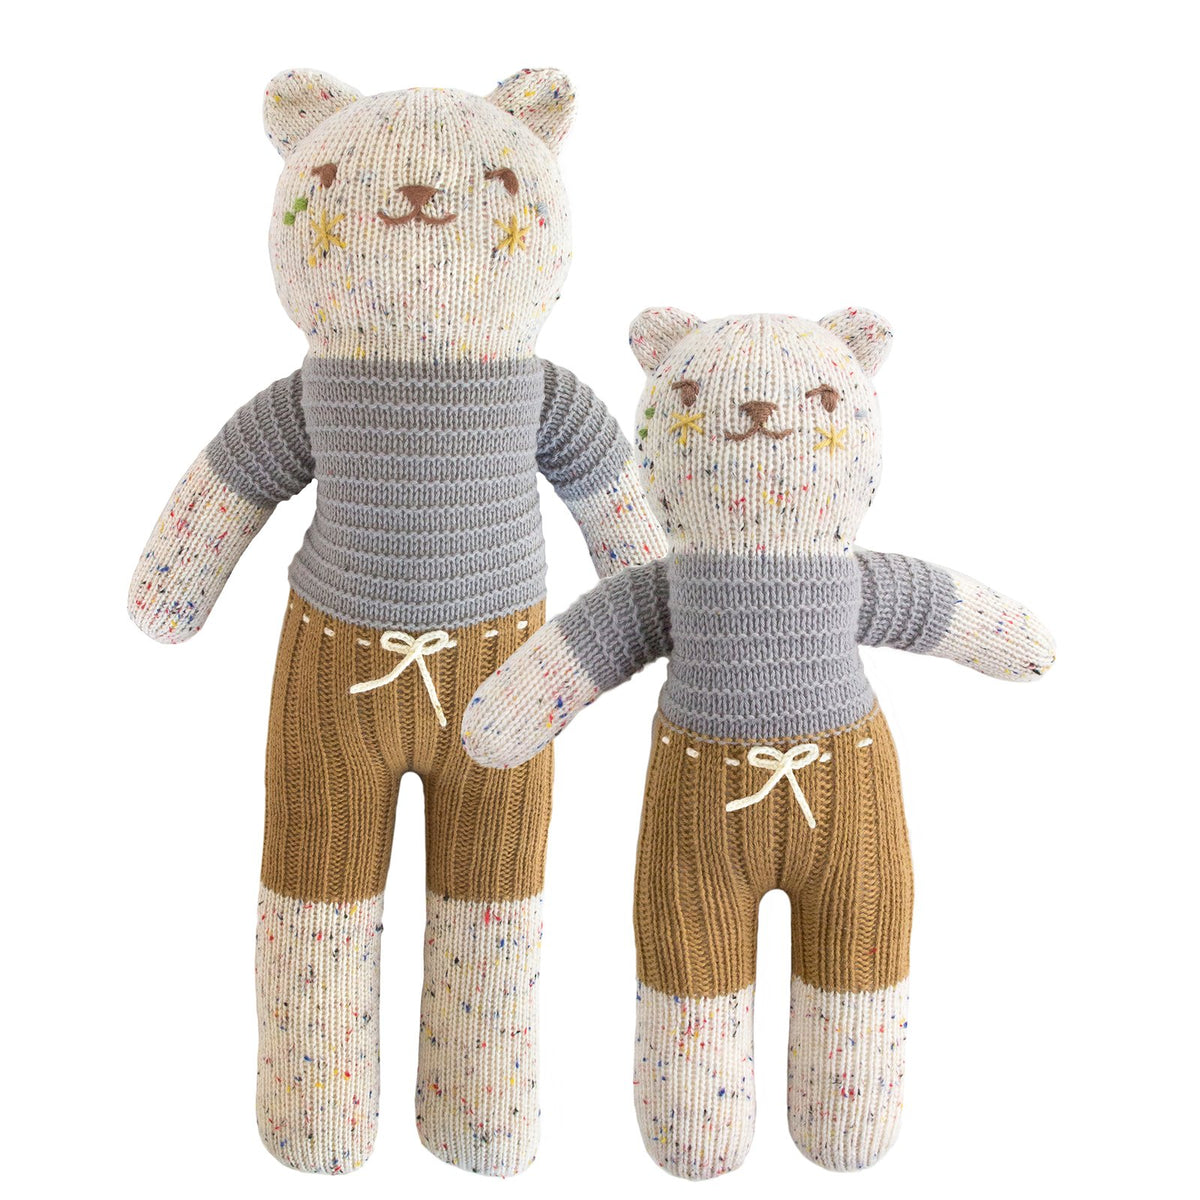 Blabla Knit Doll, Tweedy Bear - Regular Size